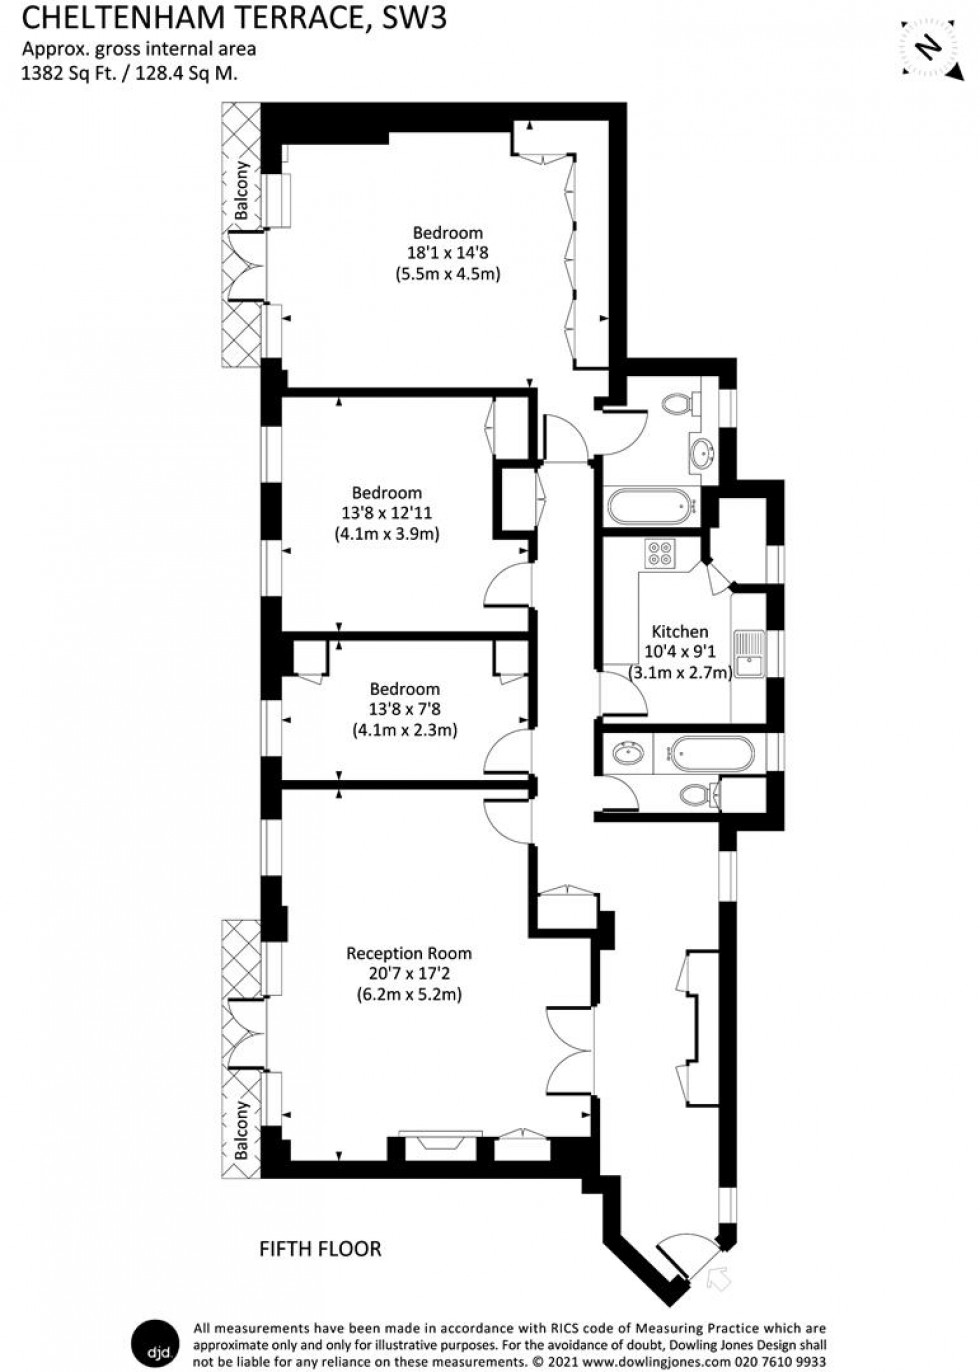 Floorplan for Whitelands House, Cheltenham Terrace SW3